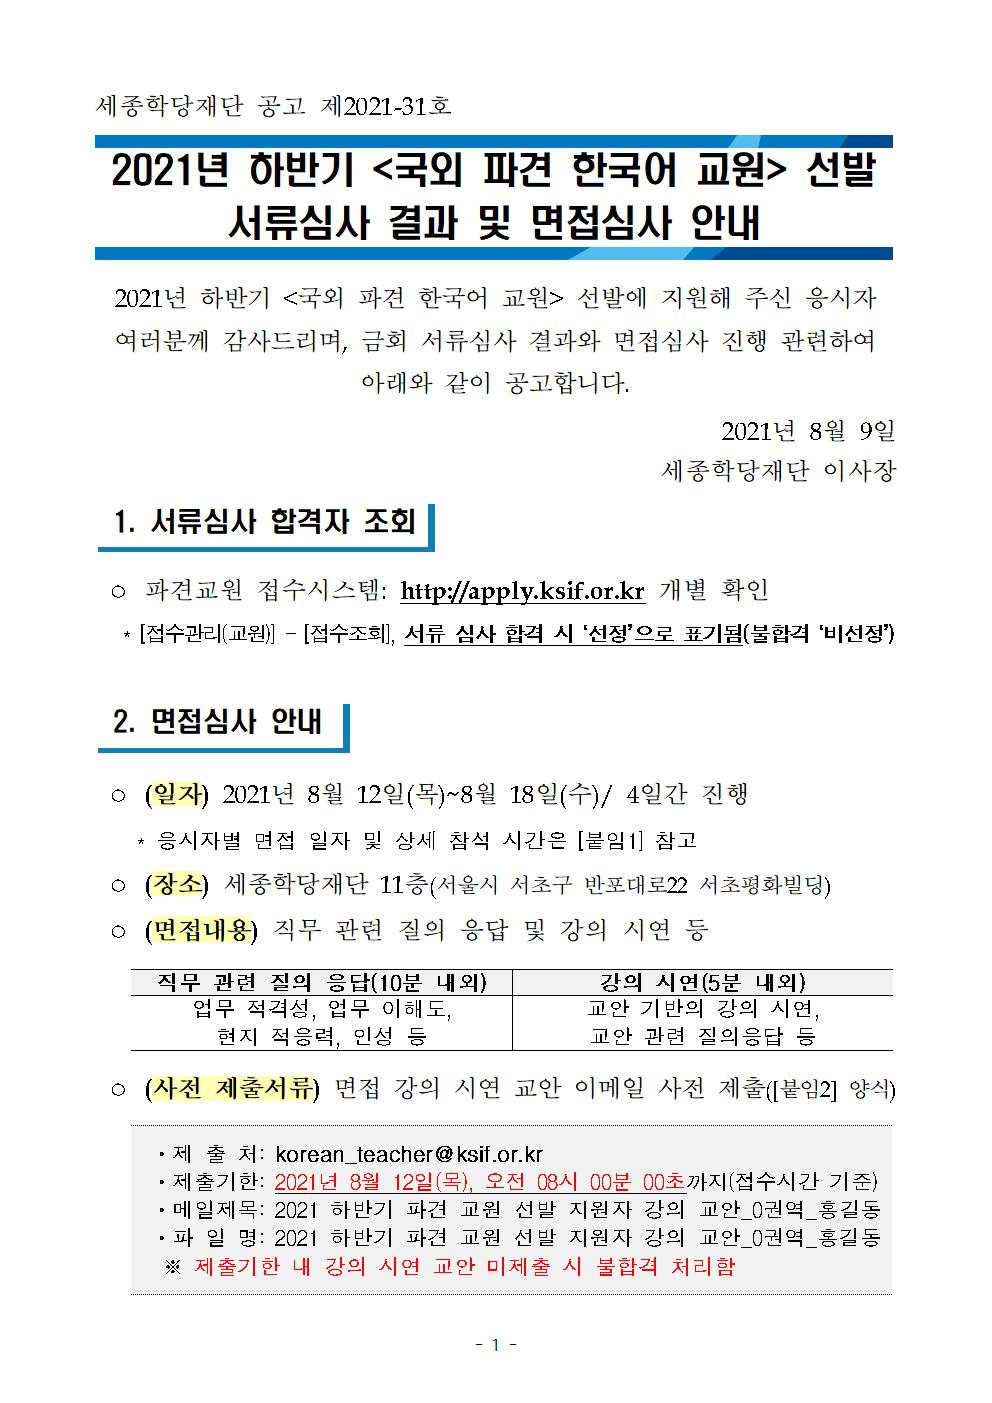 2021년 하반기 국외 파견 한국어 교원 서류심사 결과 및 면접 심사 안내_001